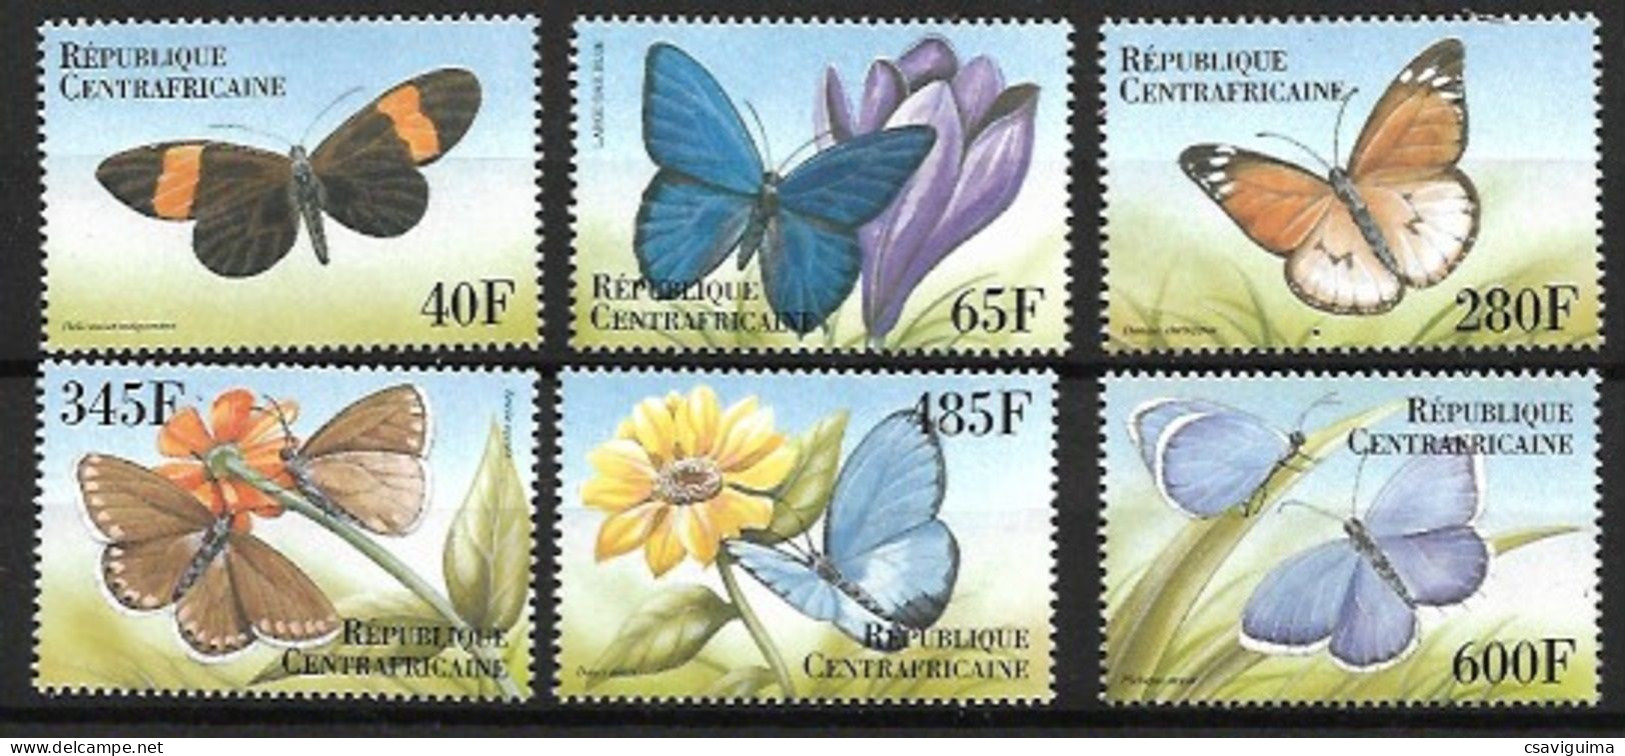 Central Africa Rep. (Centrafricaine) - 2000 - Butterflies - Yv 1618CS/CY - Butterflies